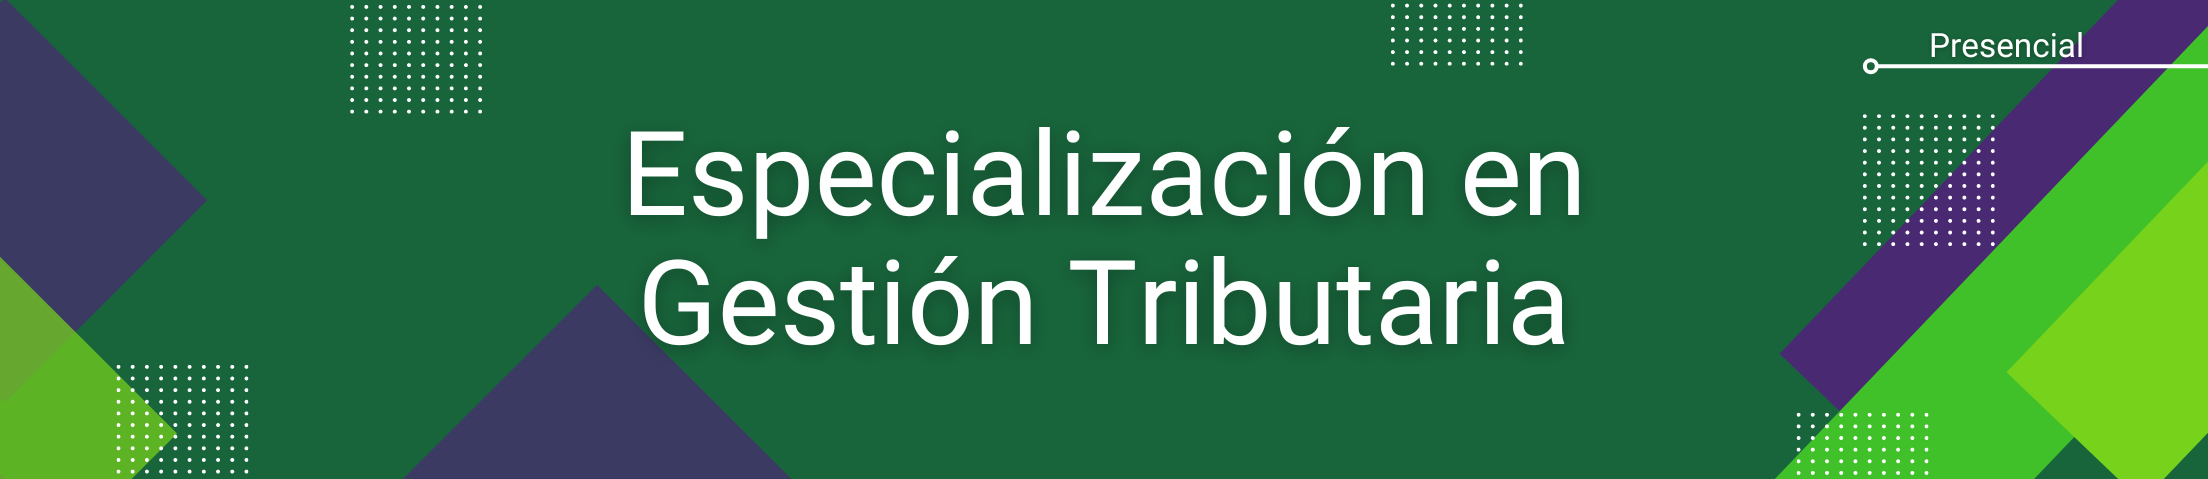 Banner Especialización en Gestión Tributaria. Modalidad: Presencial.